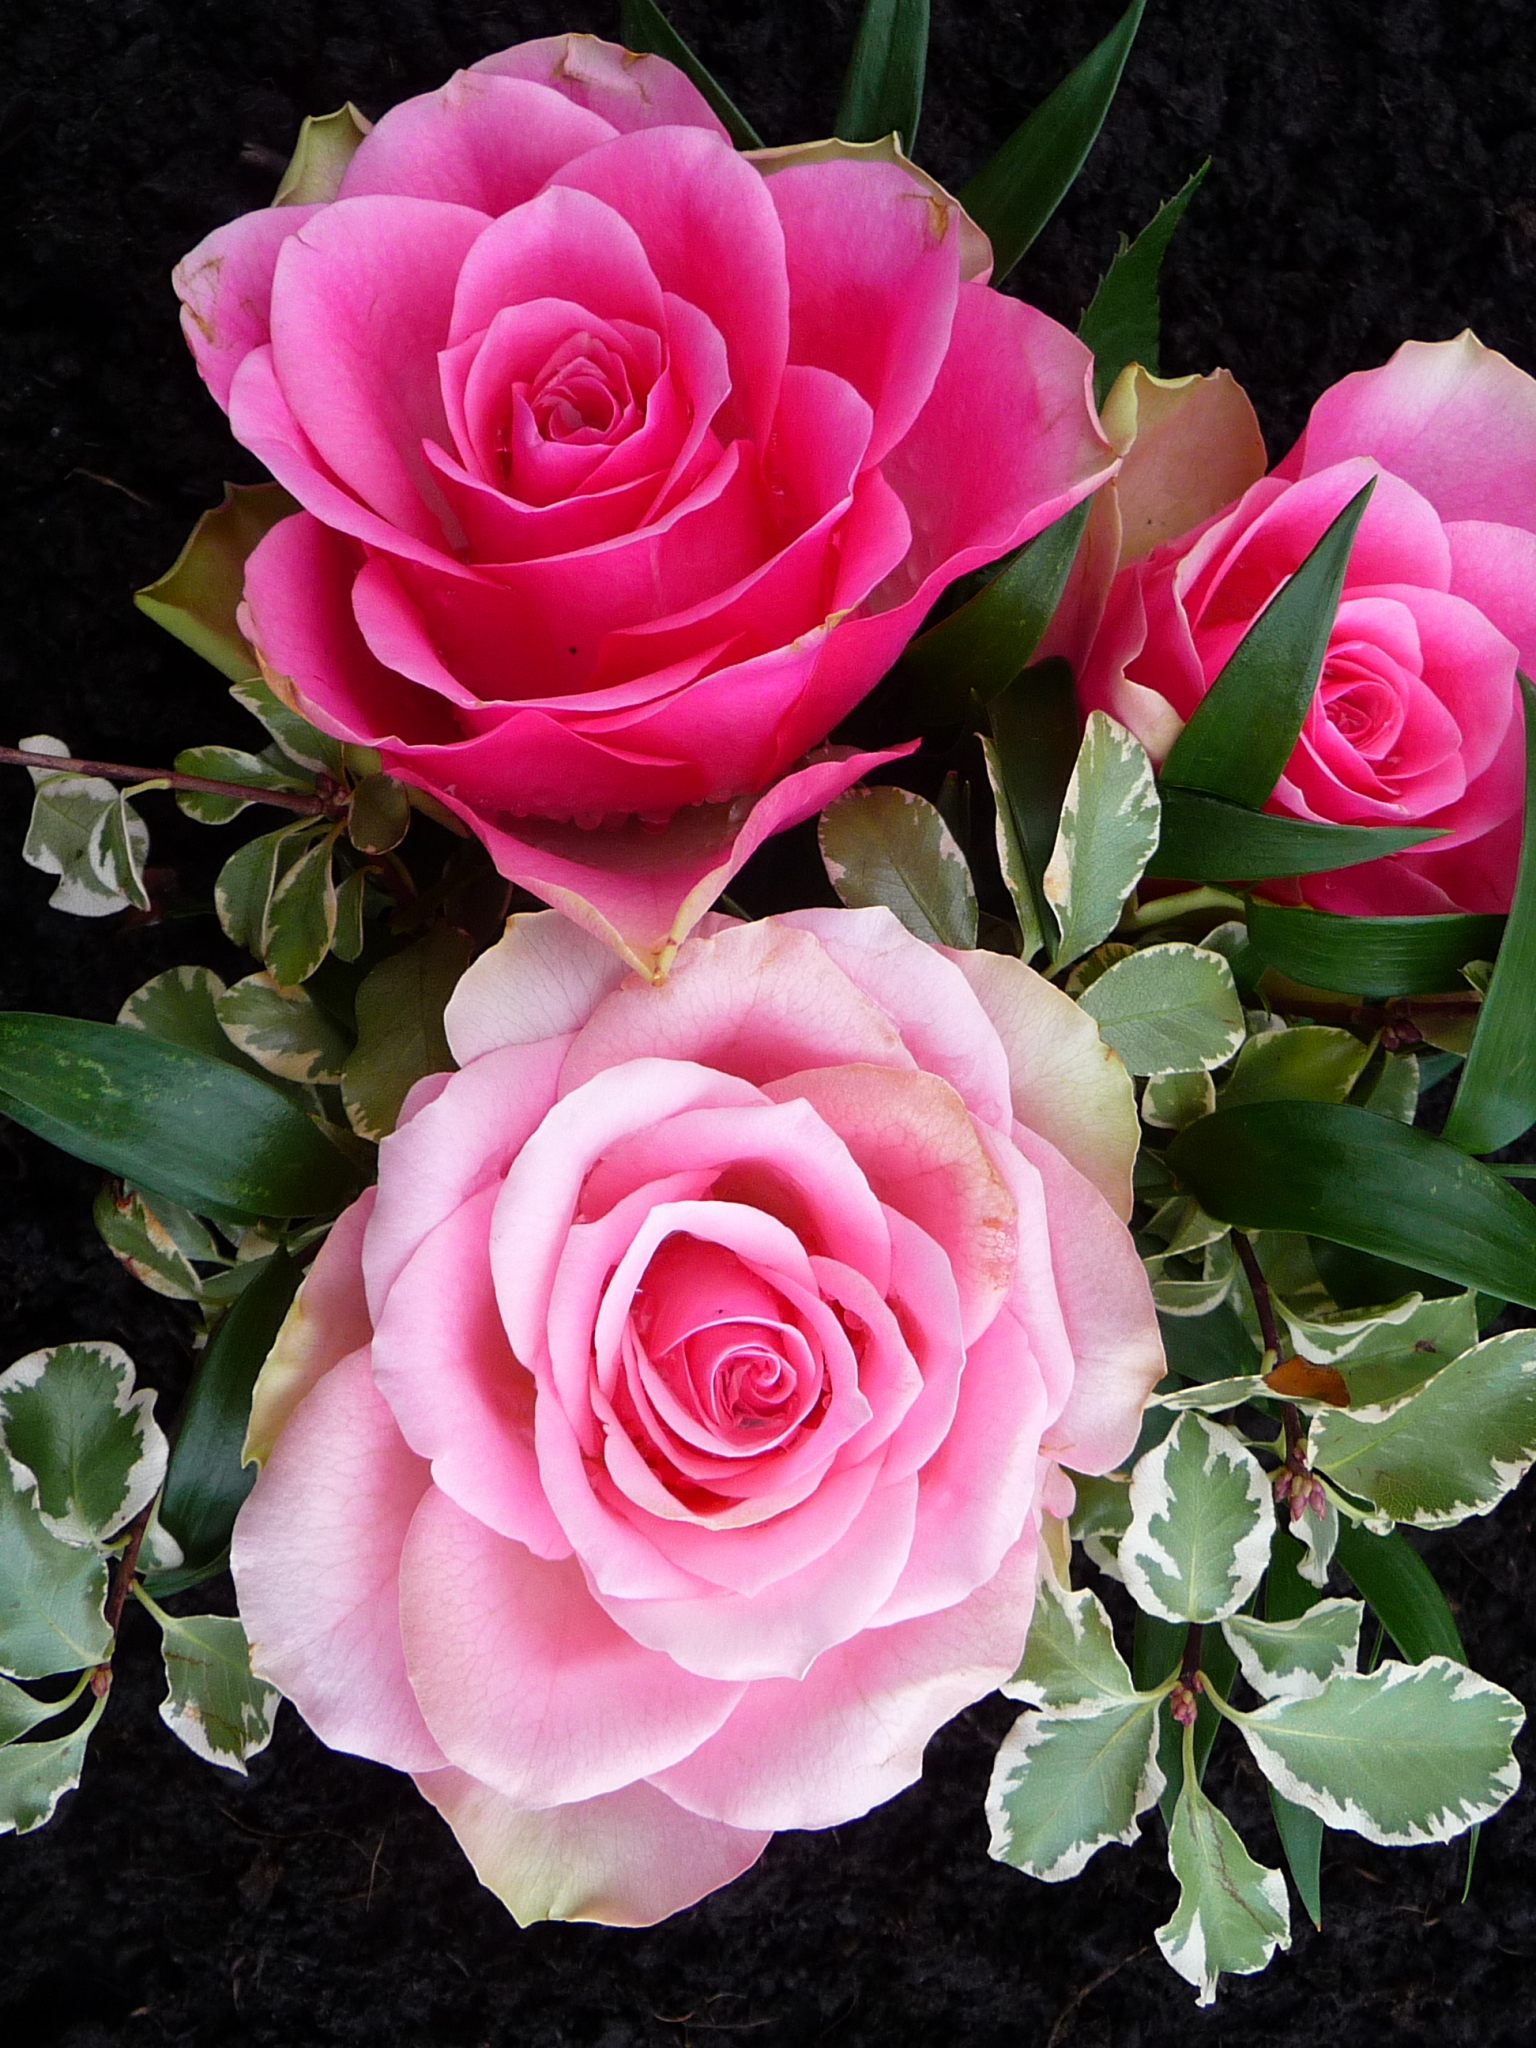 Скачать обои бесплатно Цветок, Роза, Земля/природа, Розовый Цветок, Розовая Роза, Флауэрсы картинка на рабочий стол ПК